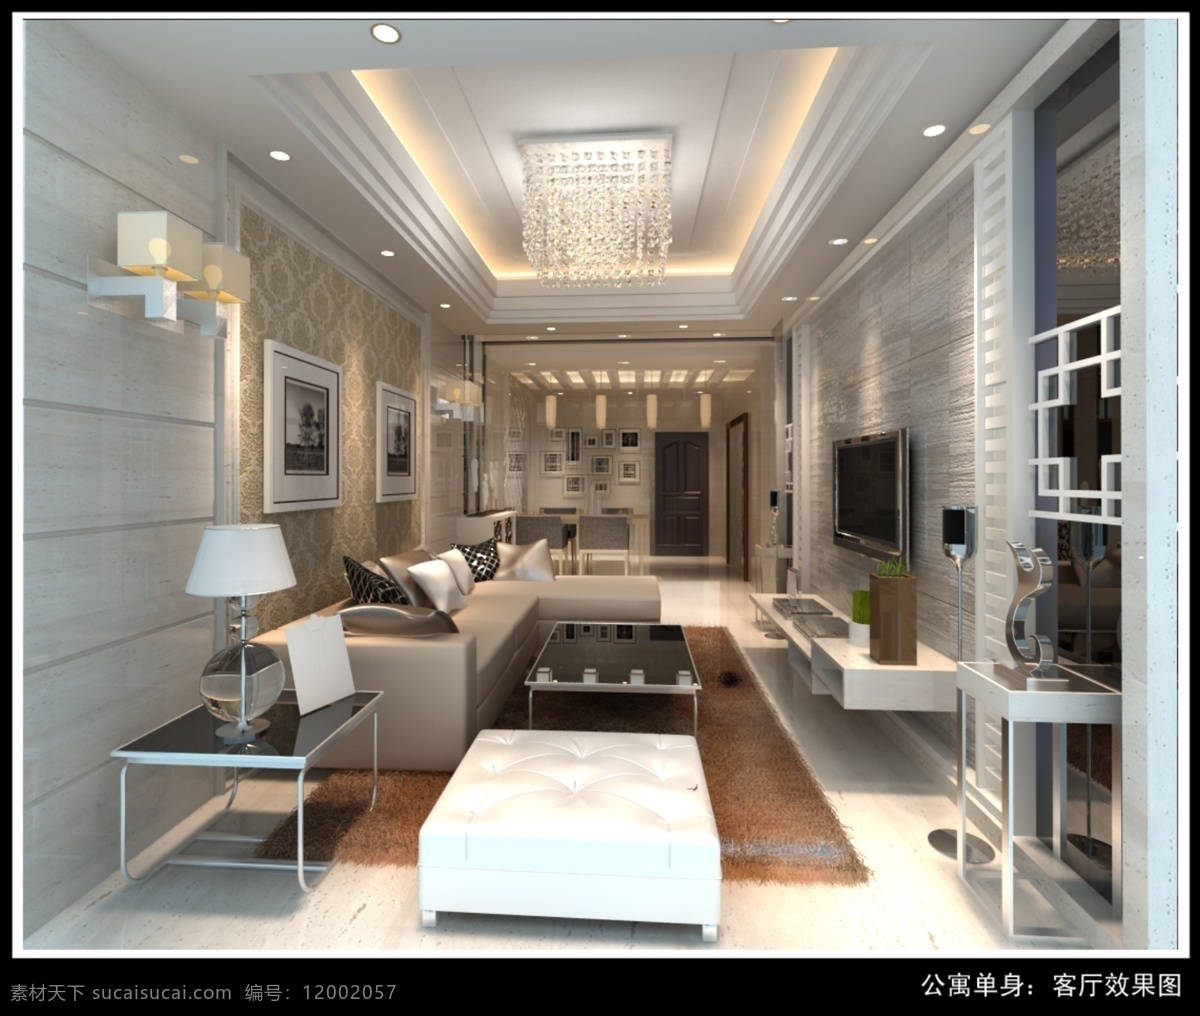 单身 公寓 客厅 图 单身公寓 室内效果图 客厅效果图 欧式客厅 欧式家具 室内设计 环境设计 bmp